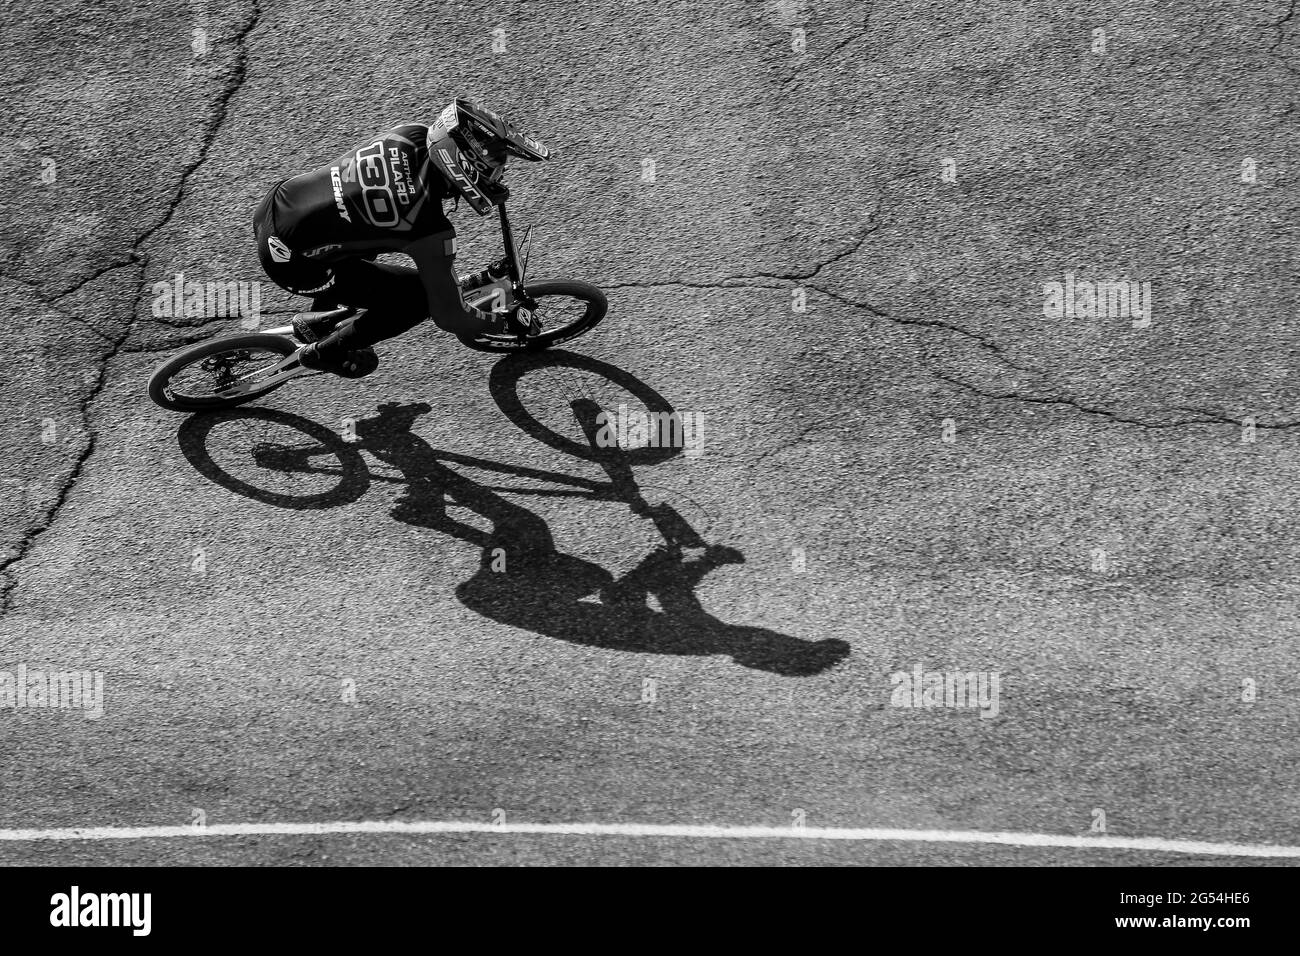 Arthur PILARD de France (130) participe à la coupe du monde UCI BMX Supercross Round 1 à l'arène olympique BMX le 8 mai 2021 à Vérone, en Italie Banque D'Images